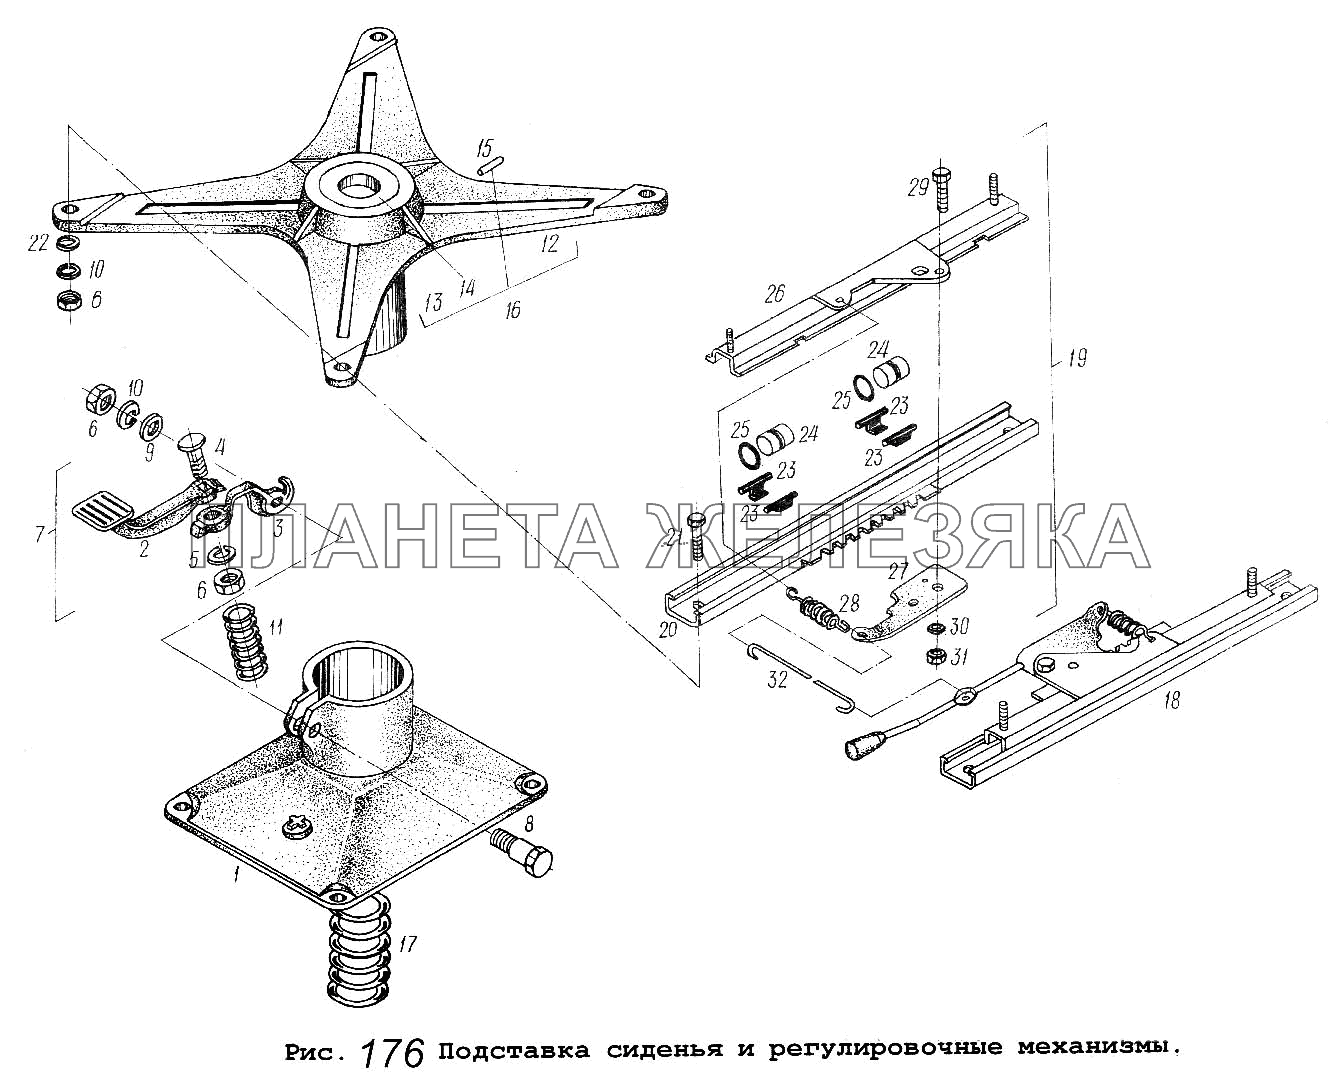 Подставка сиденья и регулировочные механизмы МАЗ-5337